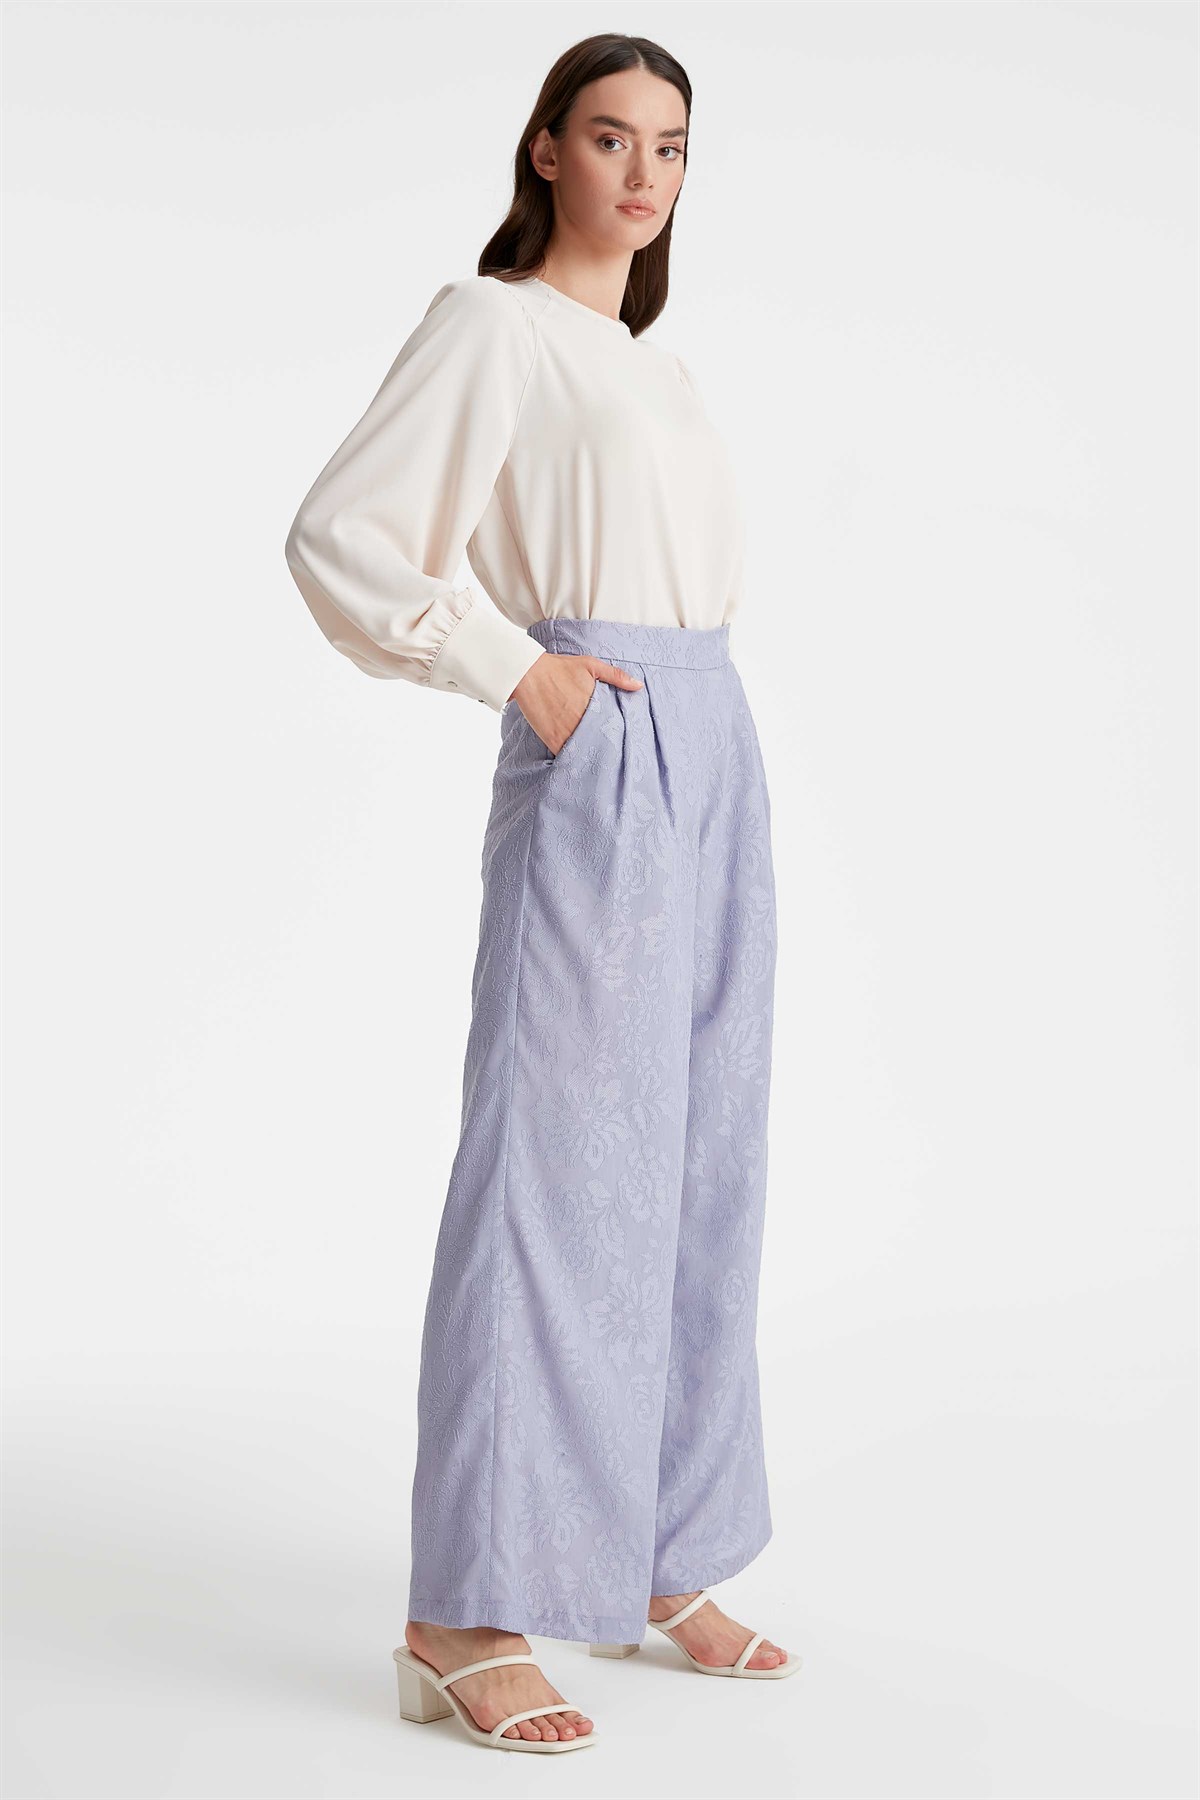 Jacquard Single Pile Trousers - Lilac